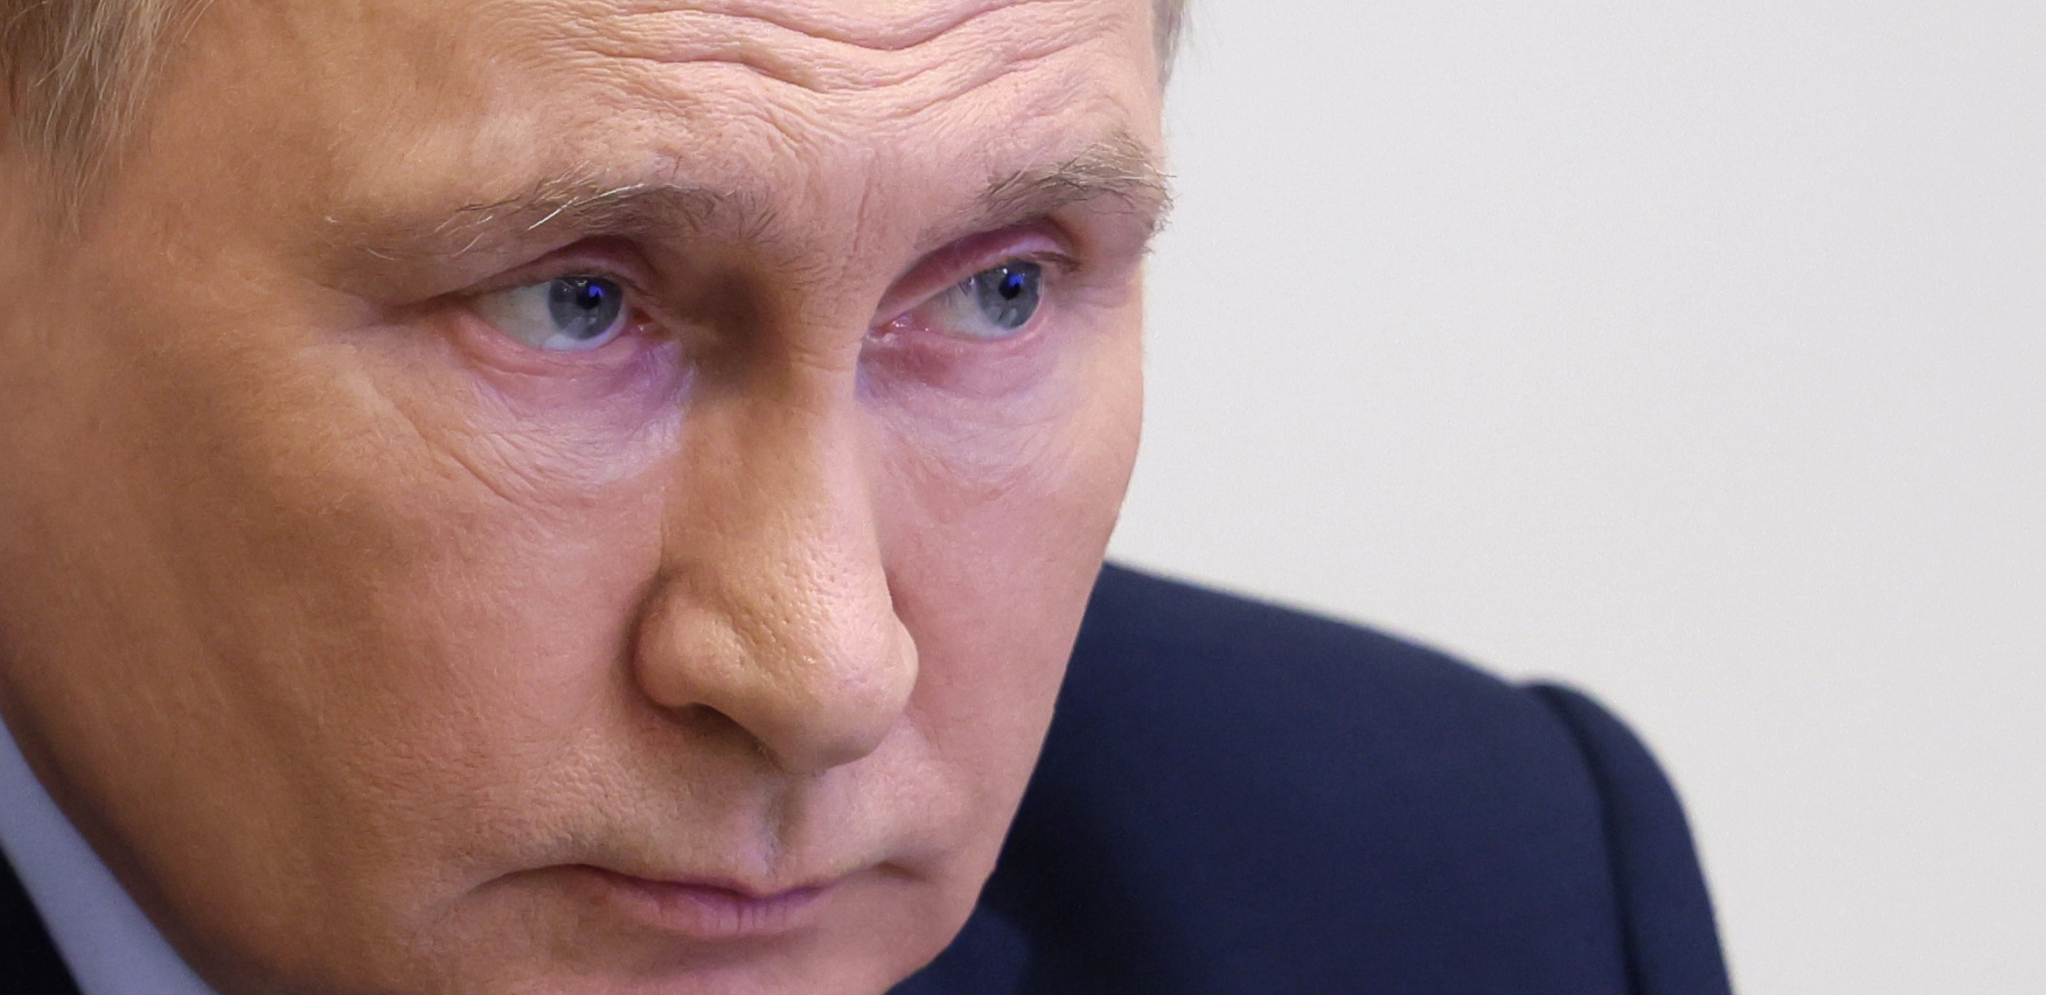 SLAVNI RUSKI REDITELJ NIKITA MIHALKOV UZ PREDSEDNIKA "Putin je jedini pravi i moćni lider svetske politike"